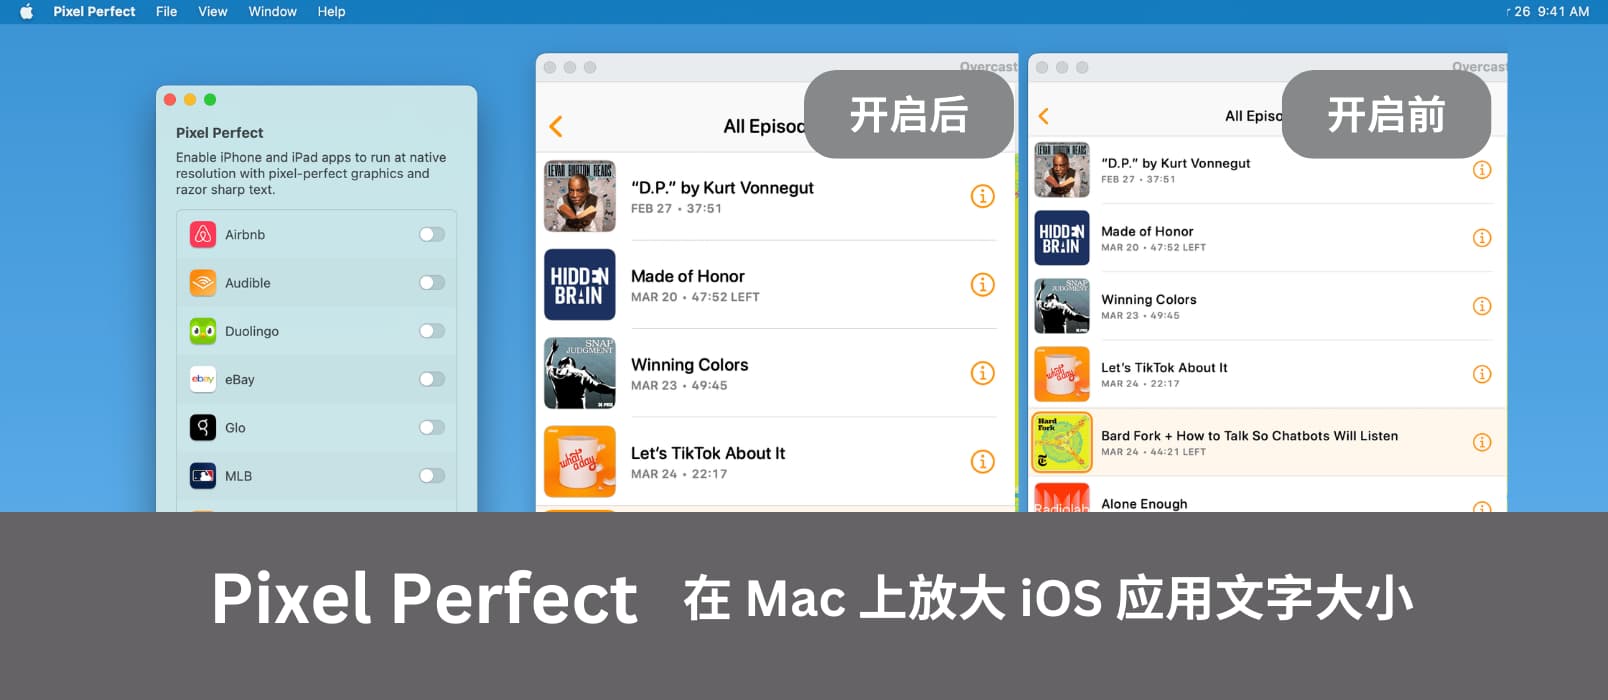 Pixel Perfect - 在 M1/M2 的 Mac 上放大 iOS 应用文字大小，告别不清晰和模糊